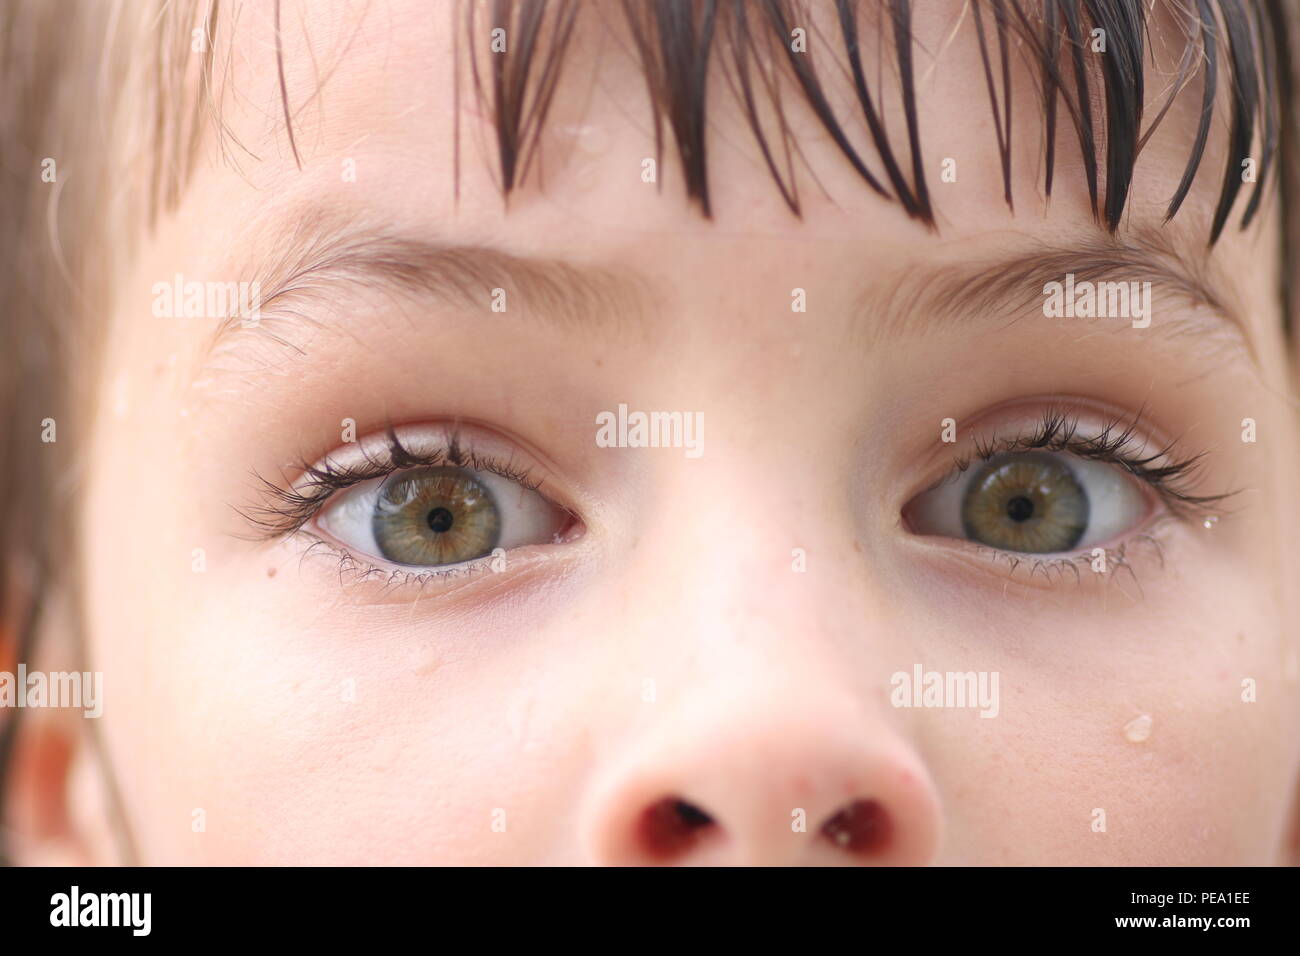 Vista dettagliata del bambino occhi verde con espressioni di paura Foto Stock